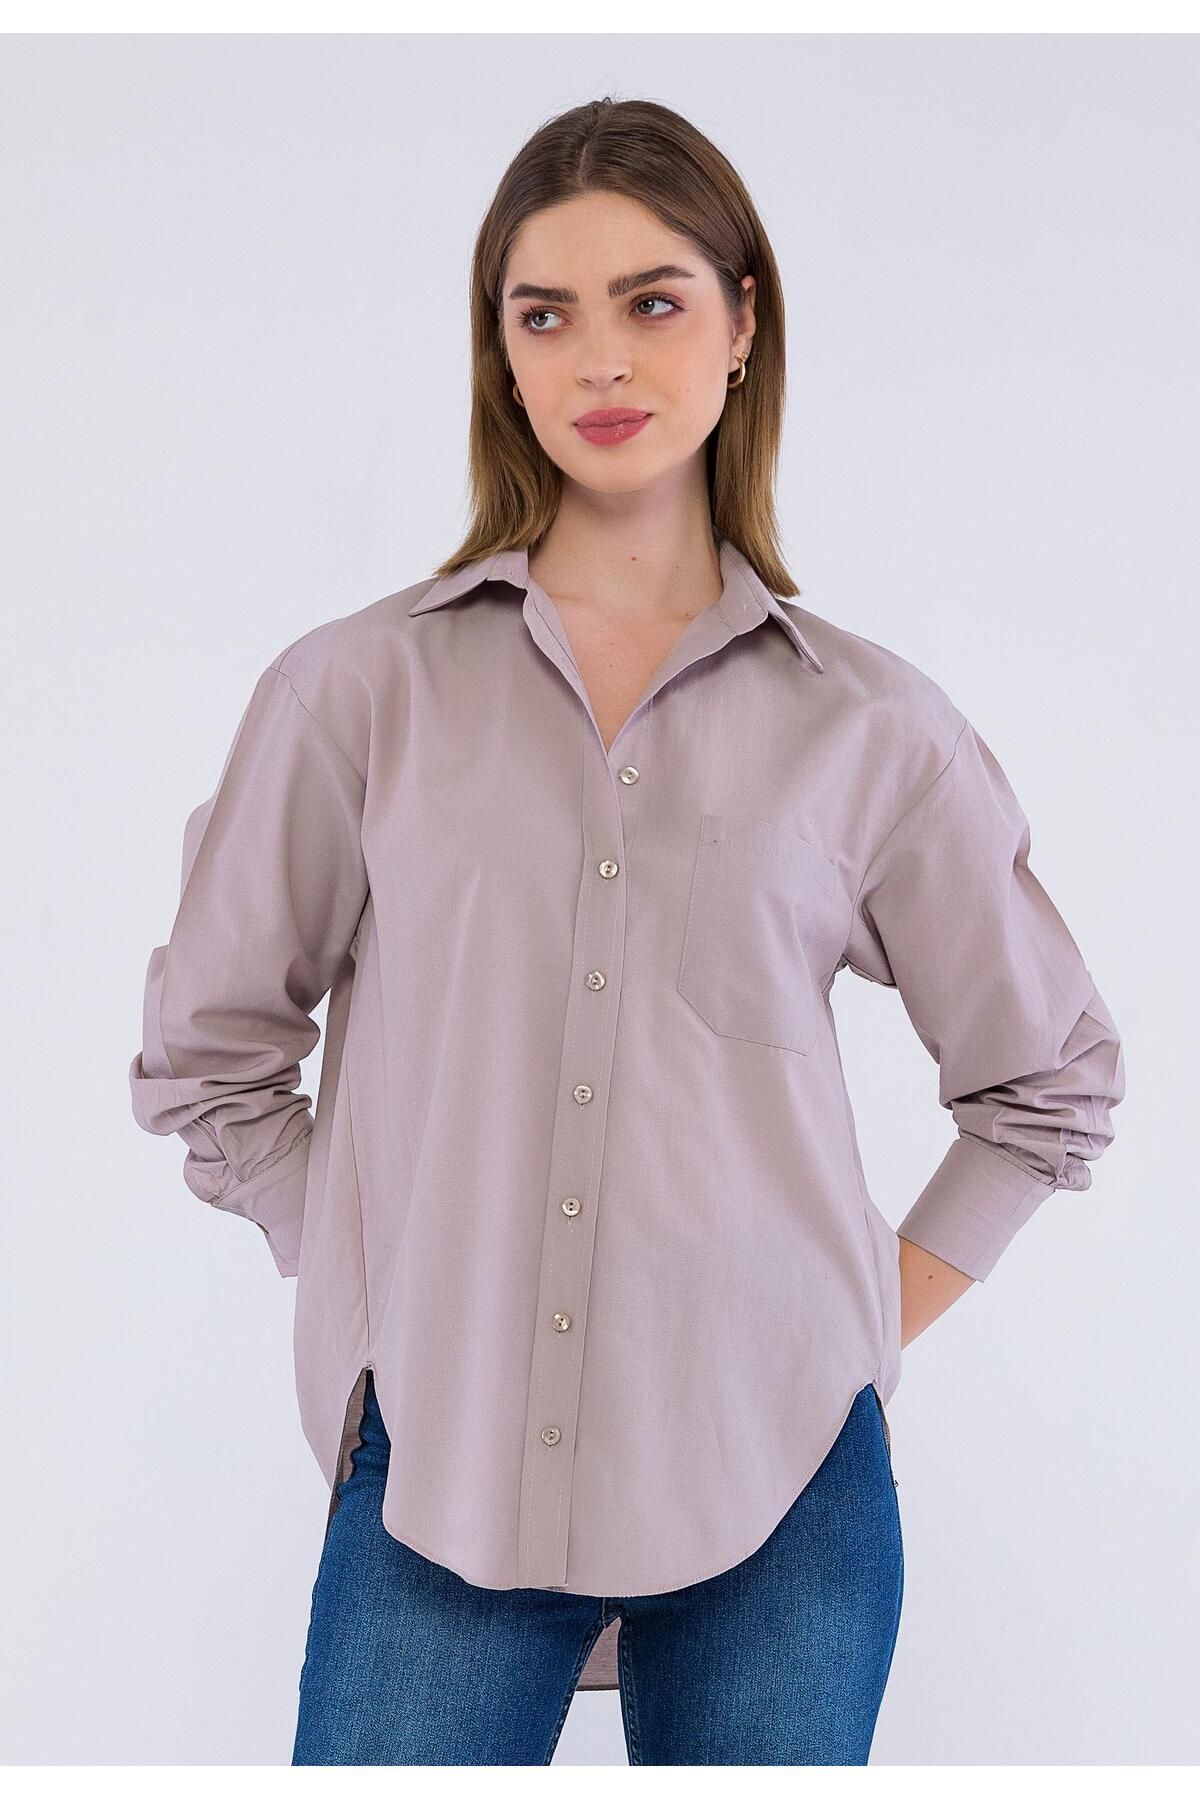 Basics&More Kadın Düz Renk Gömlek Bsm006